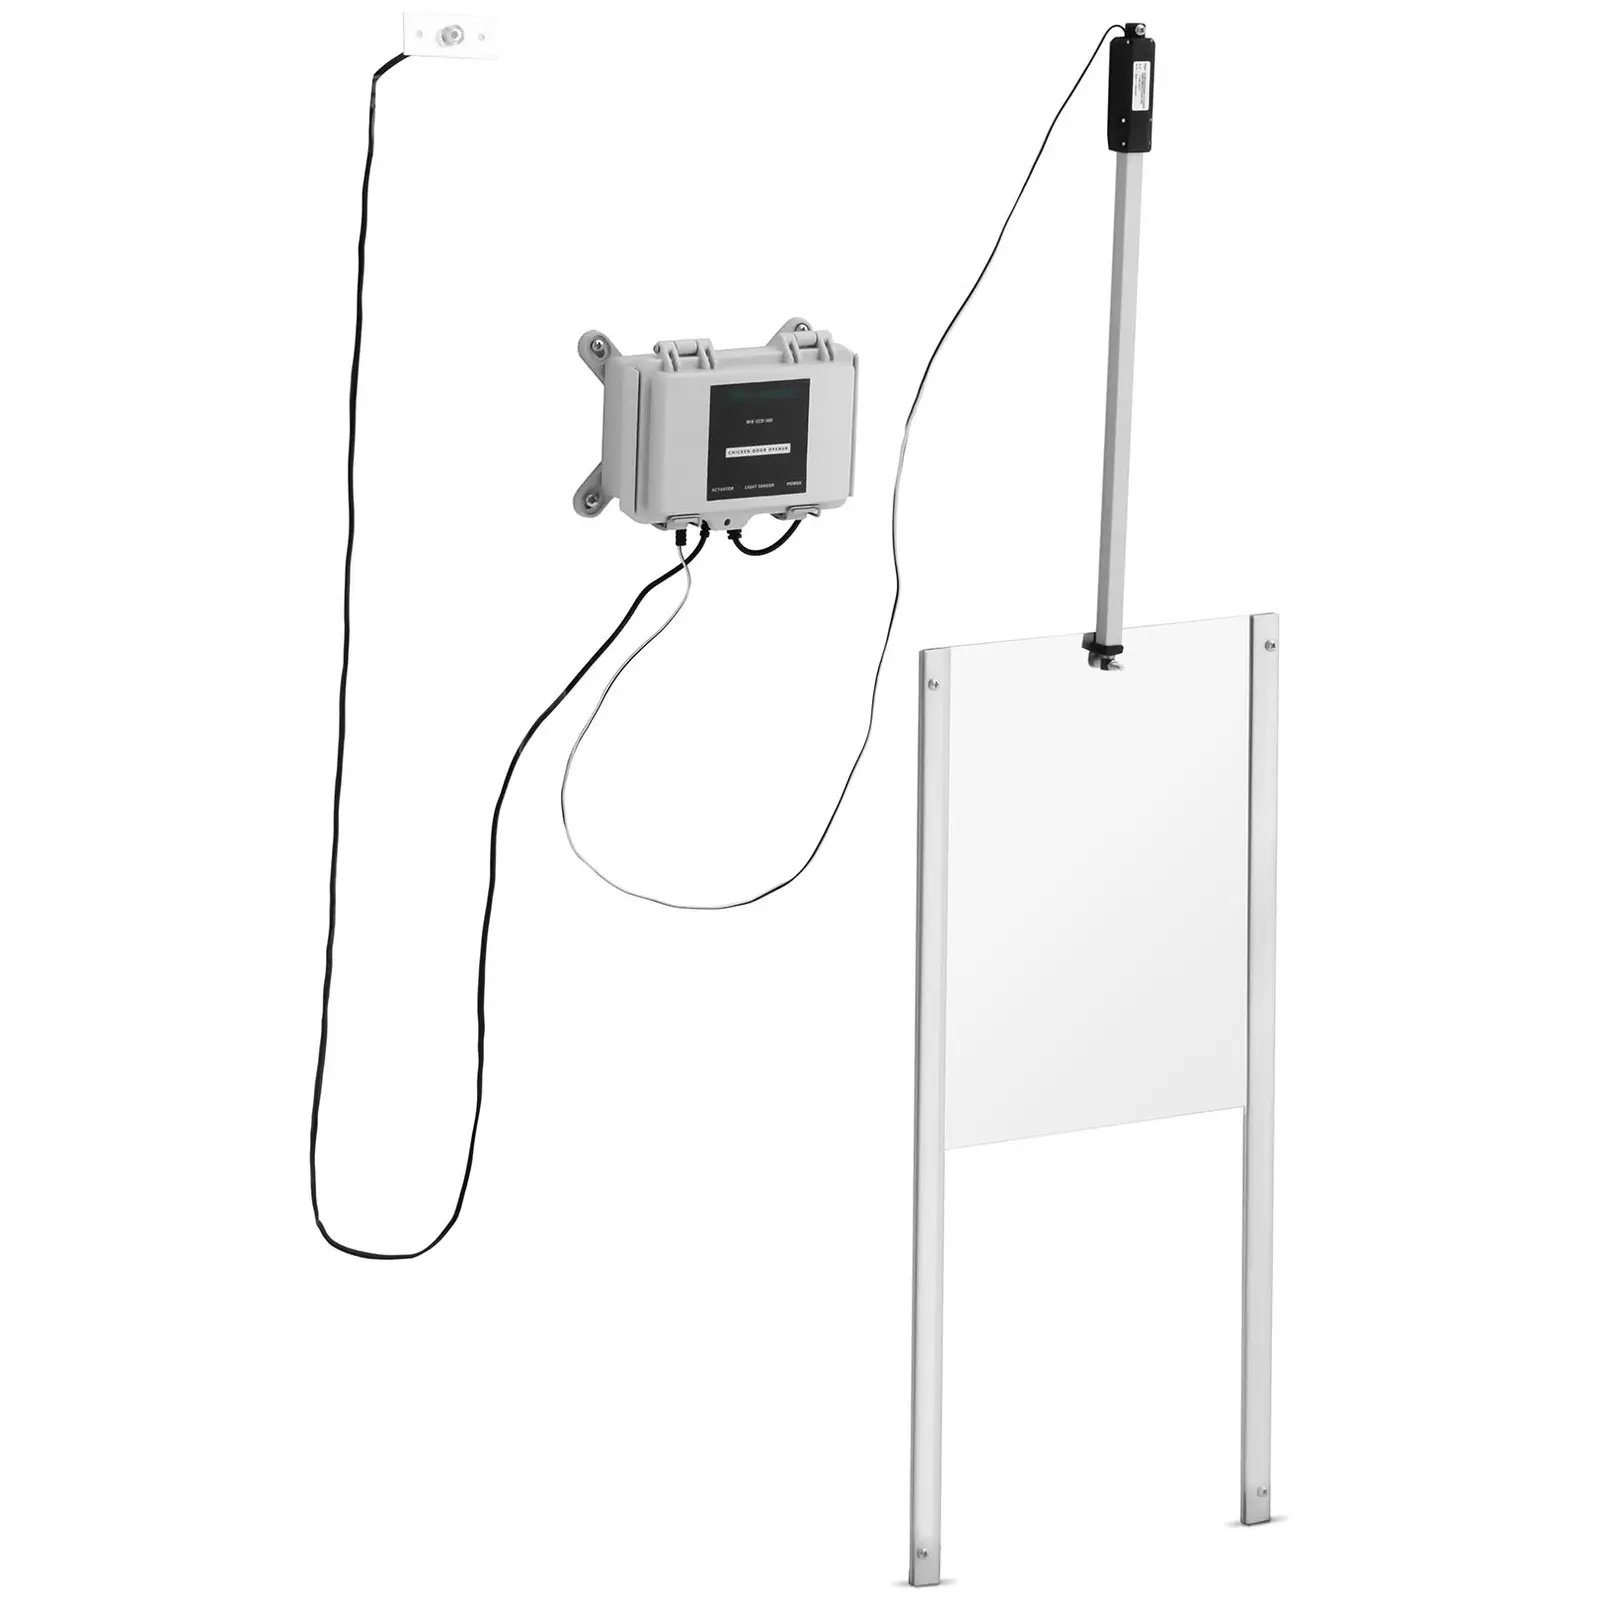 Automata tyúkól ajtó - időzítő / fényérzékelő - tápegység - vízálló ház - blokkolásgátló funkció